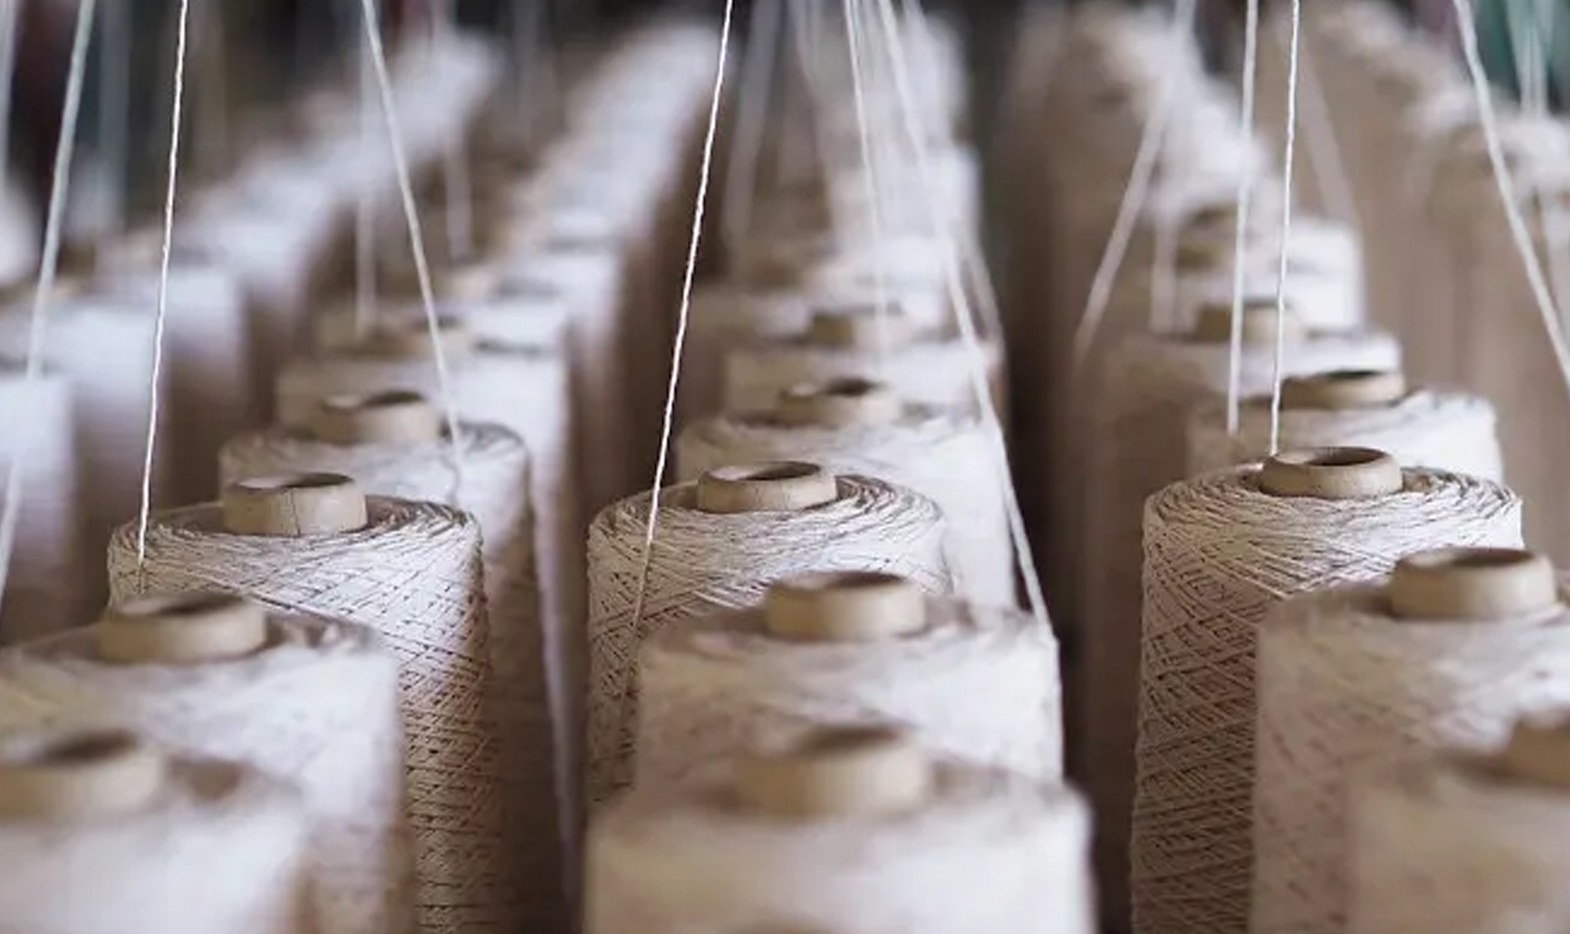 Sme tiež dodávateľom tkanín so silou na poskytovanie vysokokvalitných tkanín